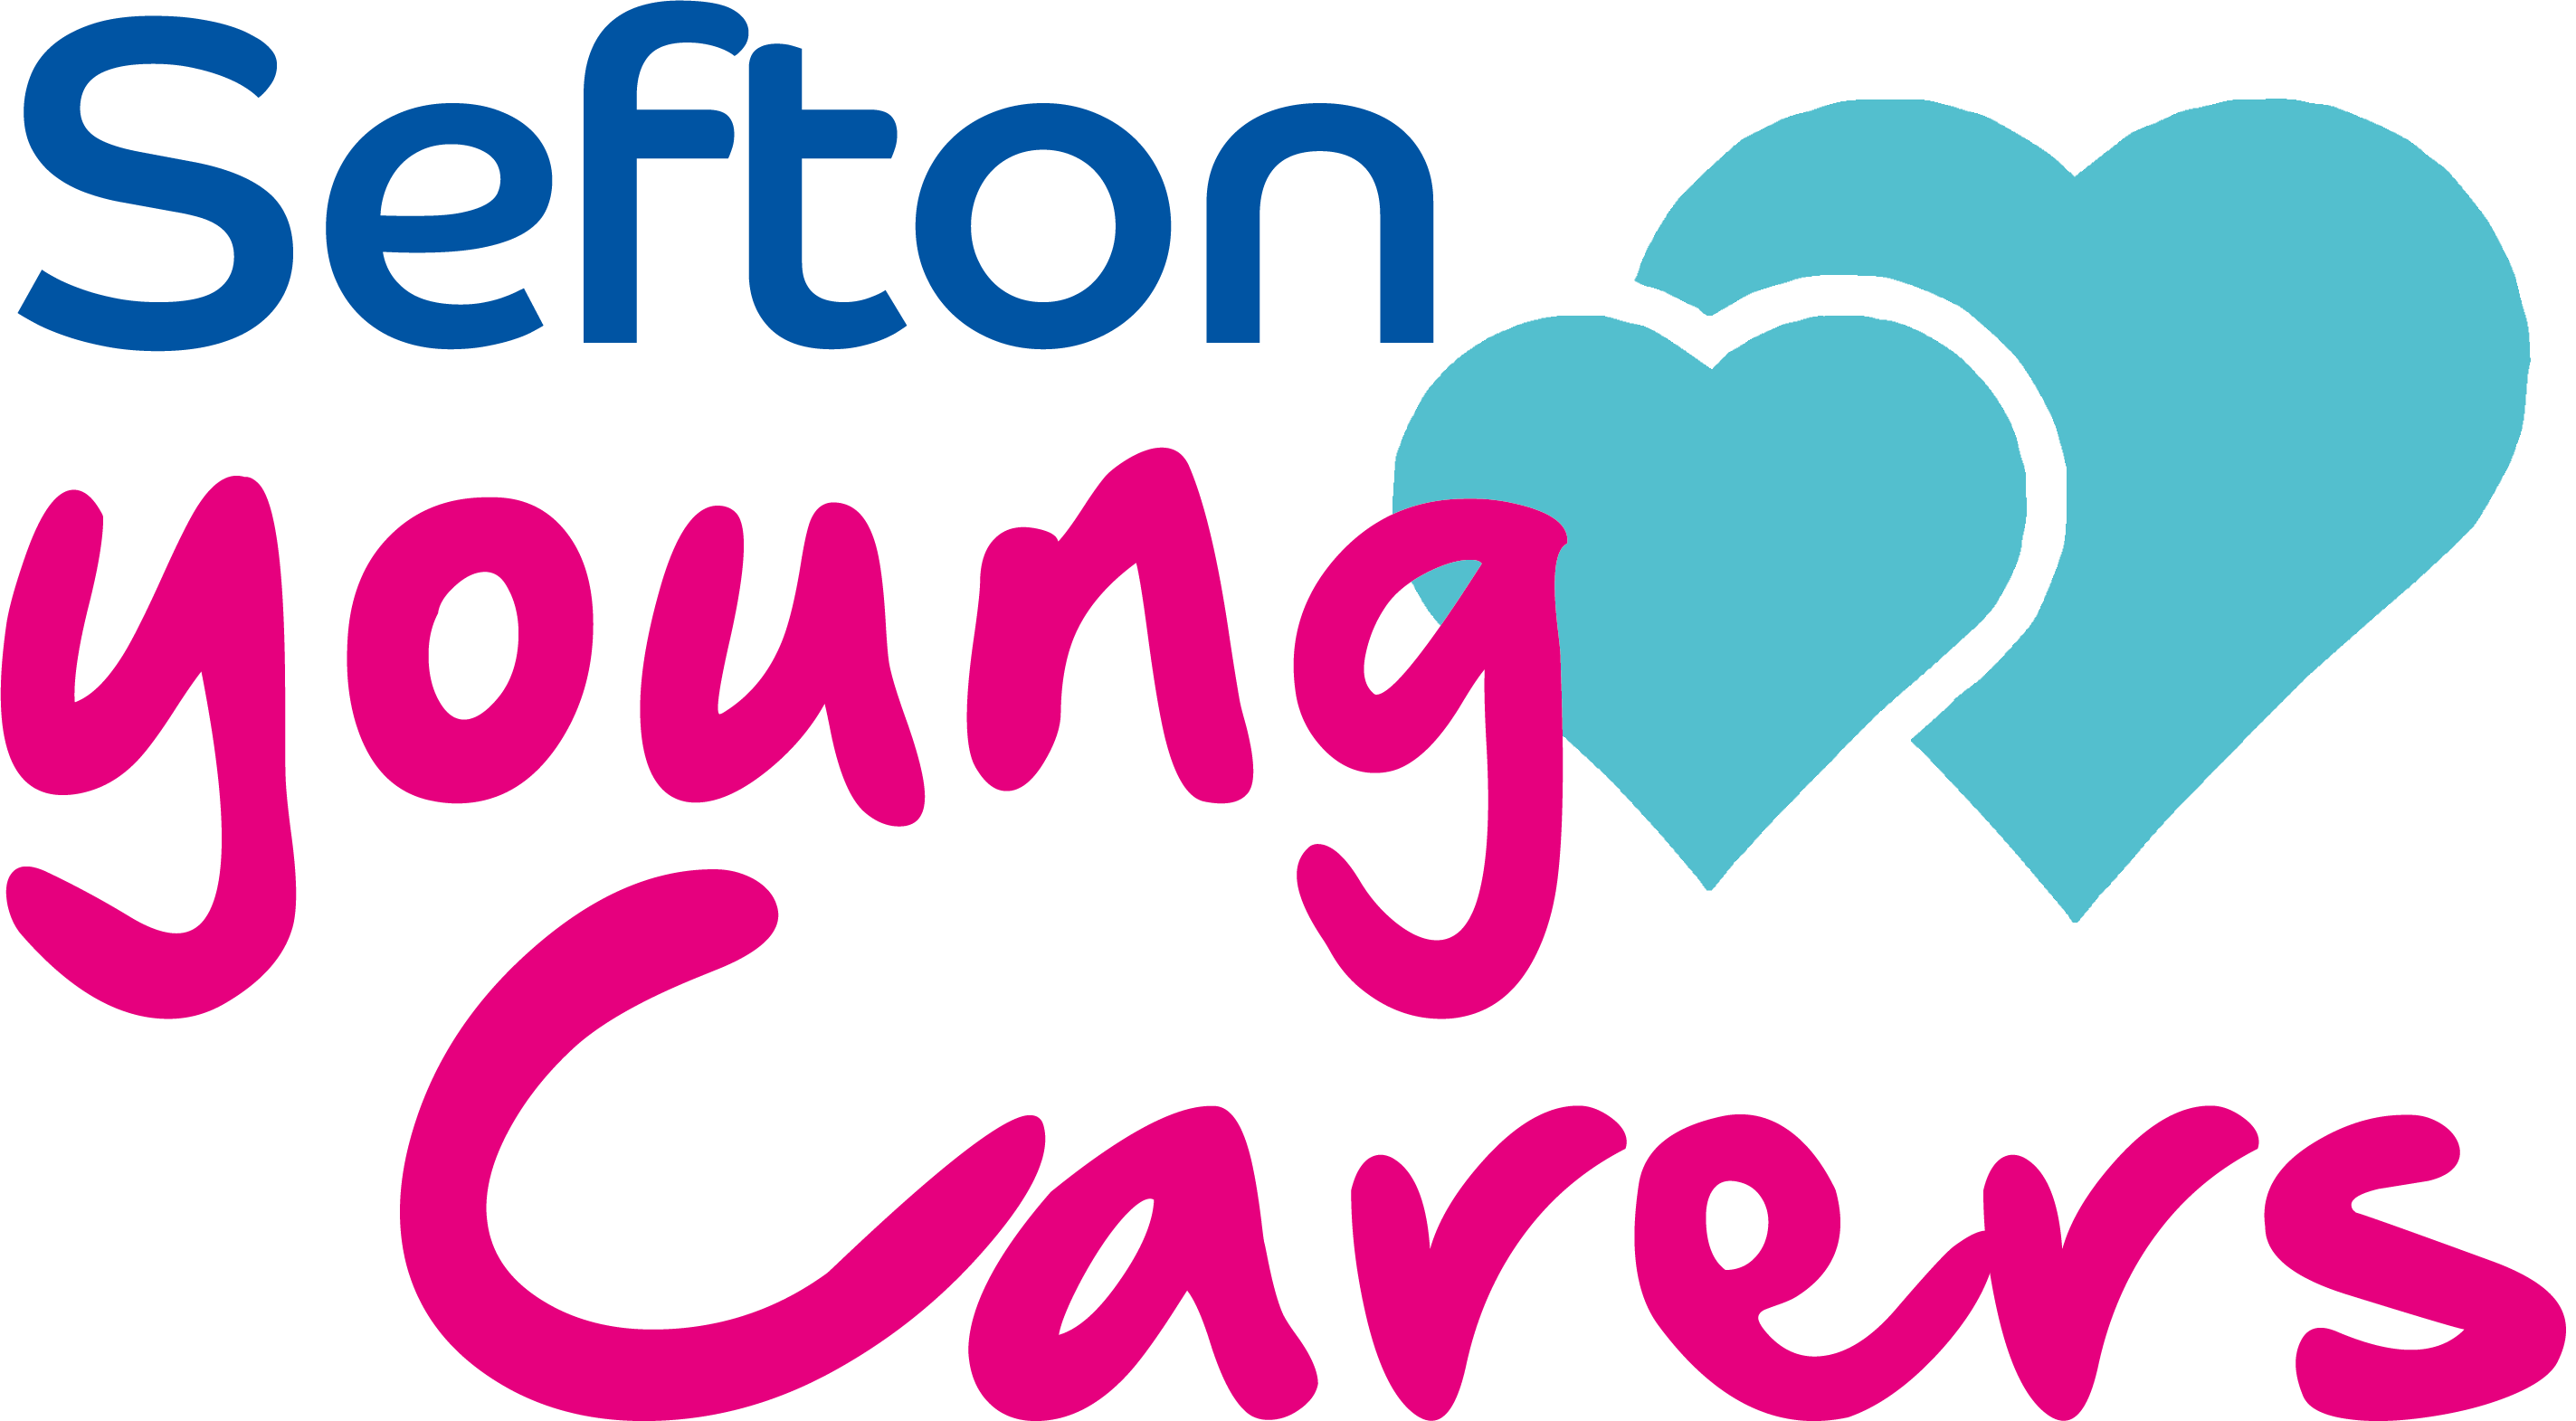 Sefton Young Carer Logo2